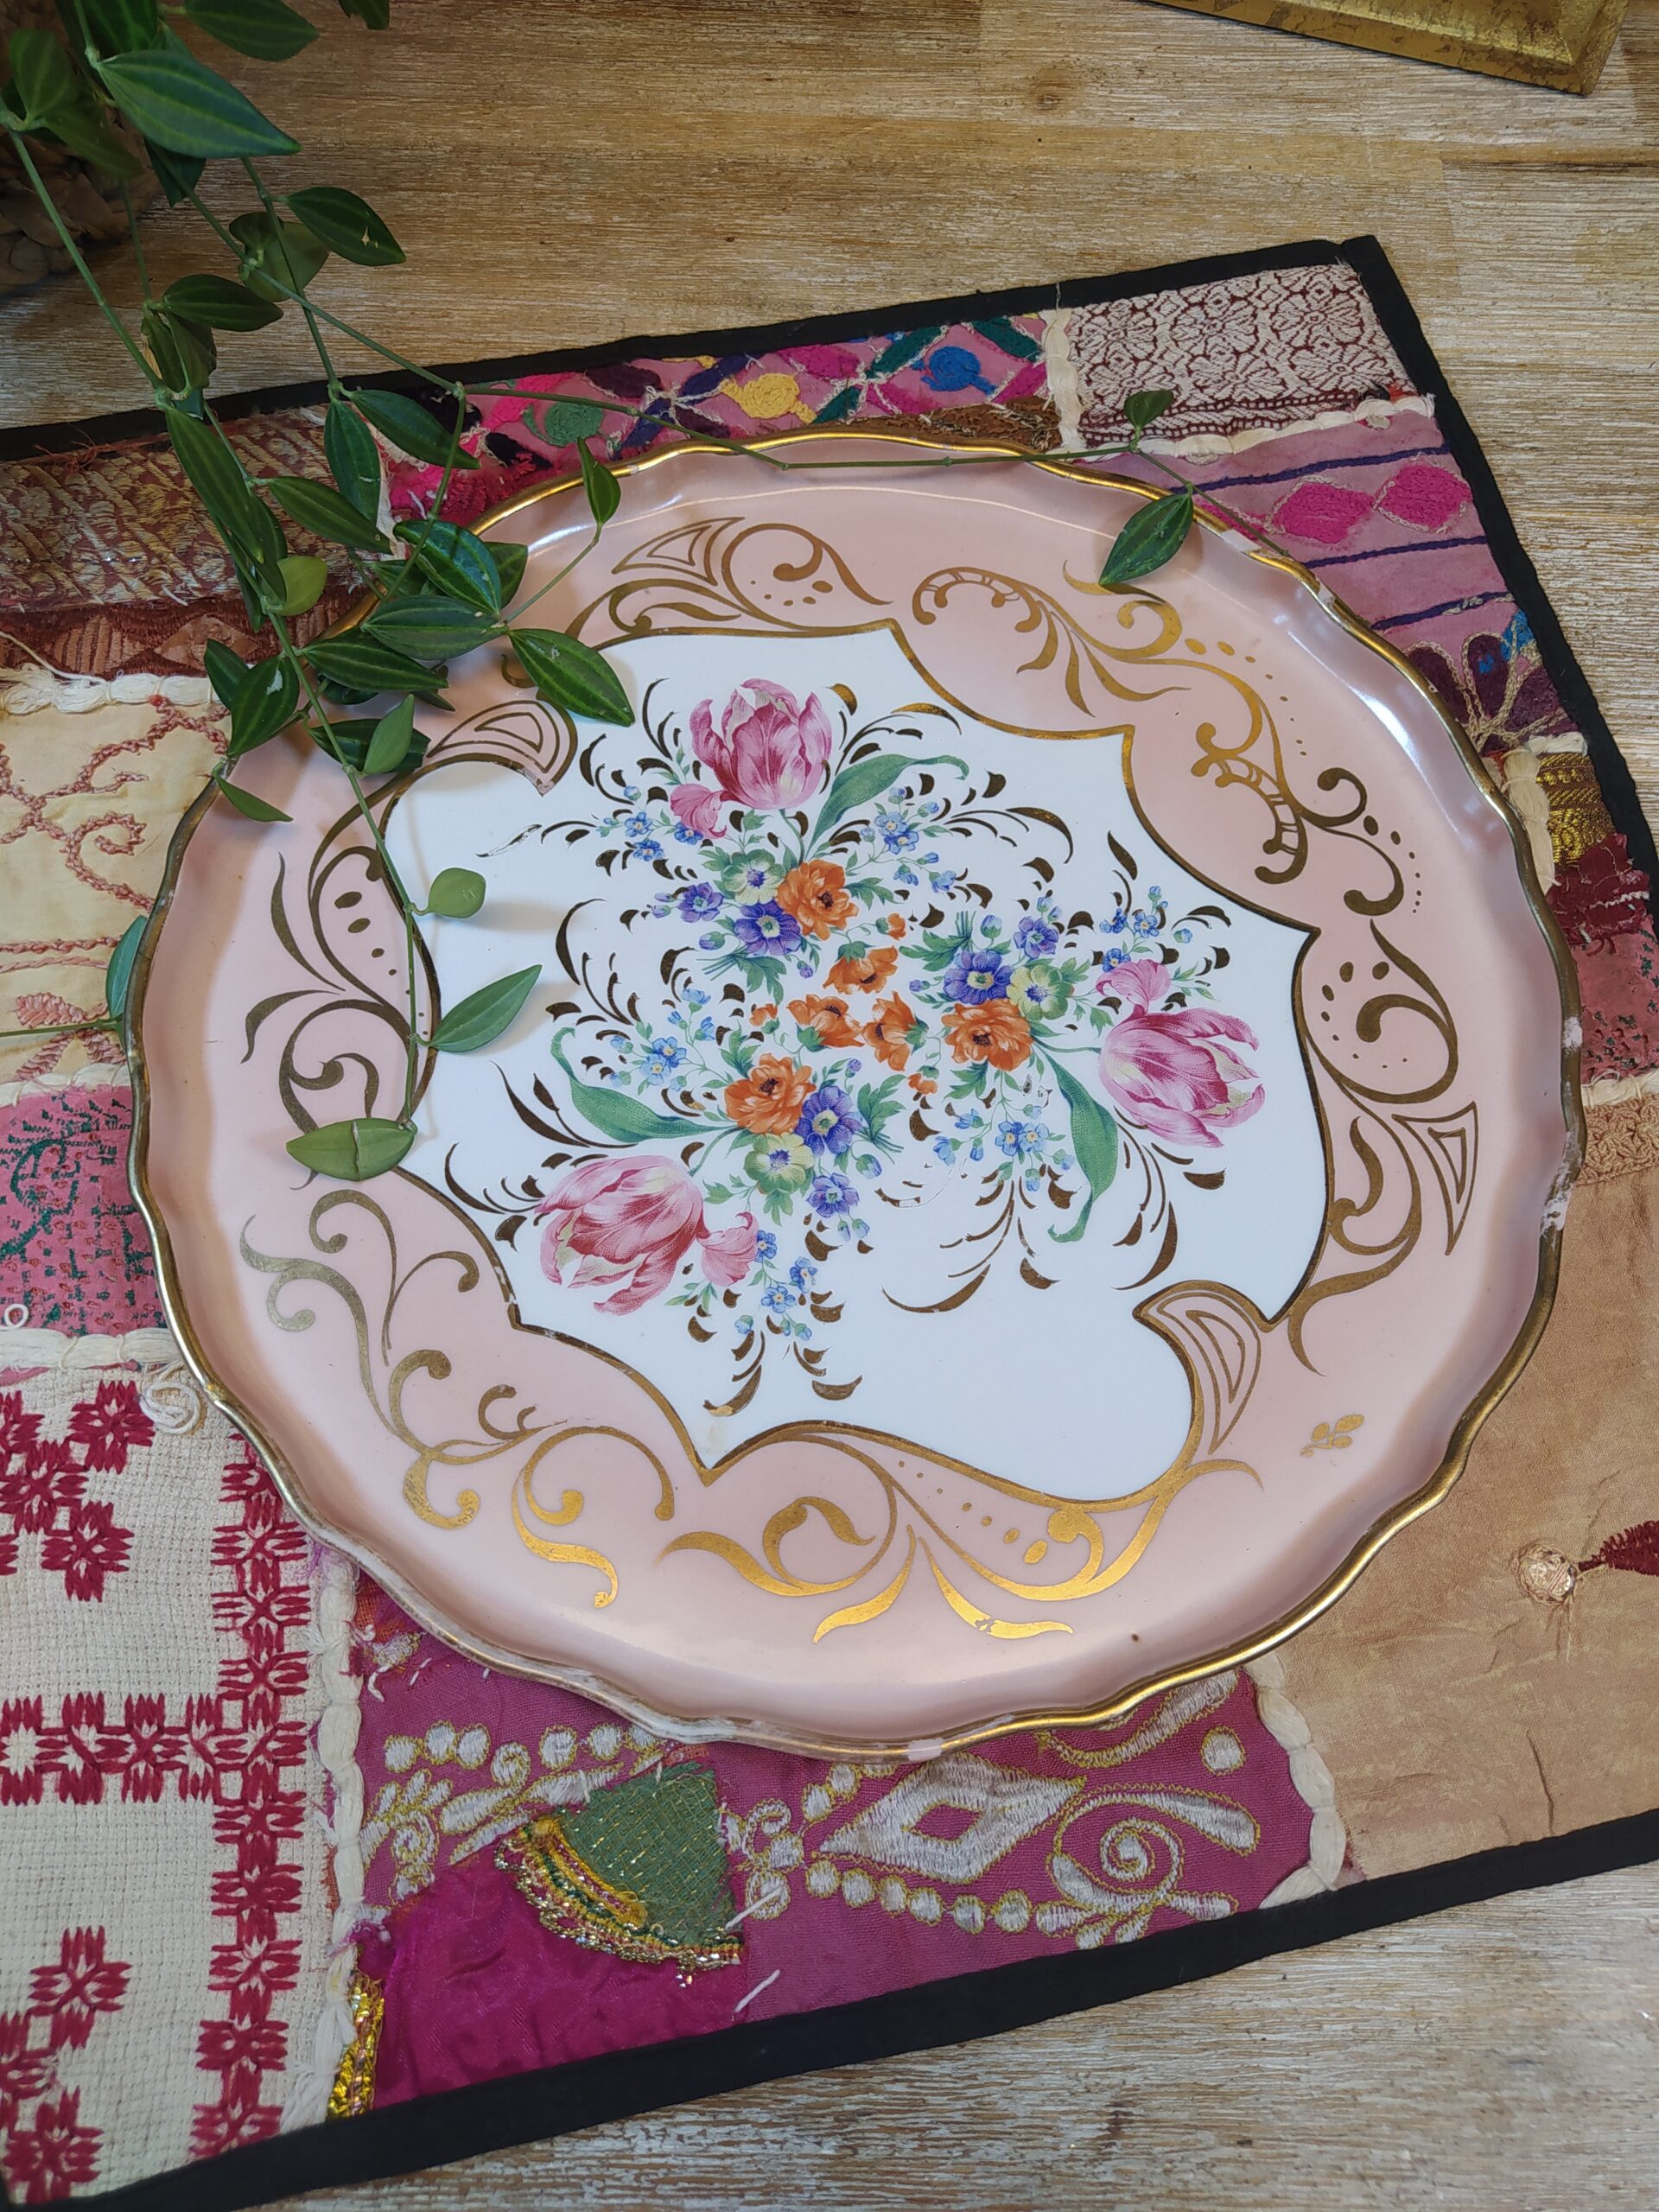 Jolie assiette aux bords hauts en porcelaine vintage de la manufacture de Couleuvre, avec ses motifs floraux et ses arabesques dans des teintes roses et dorées.